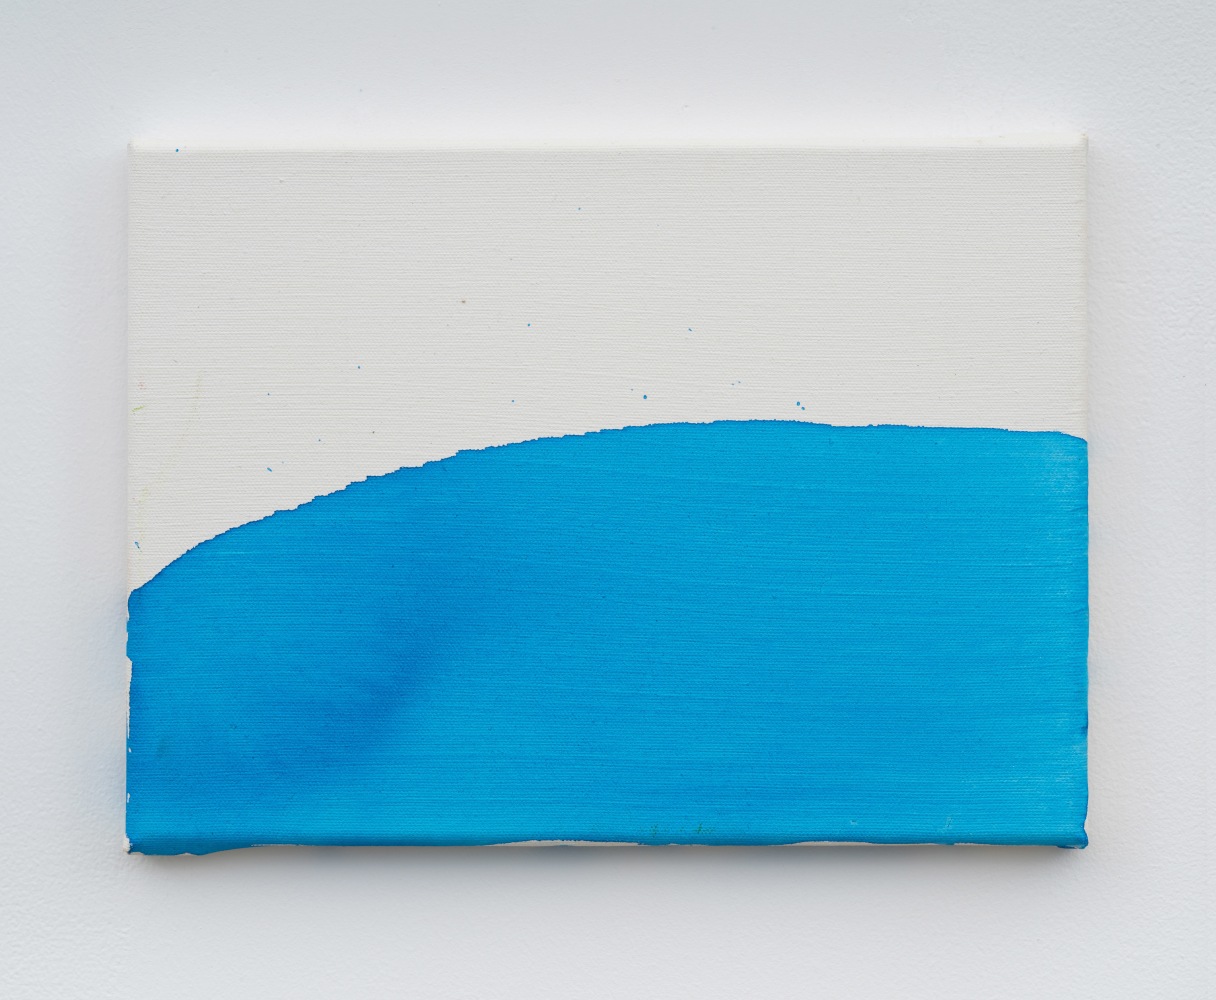 Mary Heilmann

Clear Day

2020

Acrylic on canvas

9 x 12 inches (22.9 x 30.5 cm)

MH 702